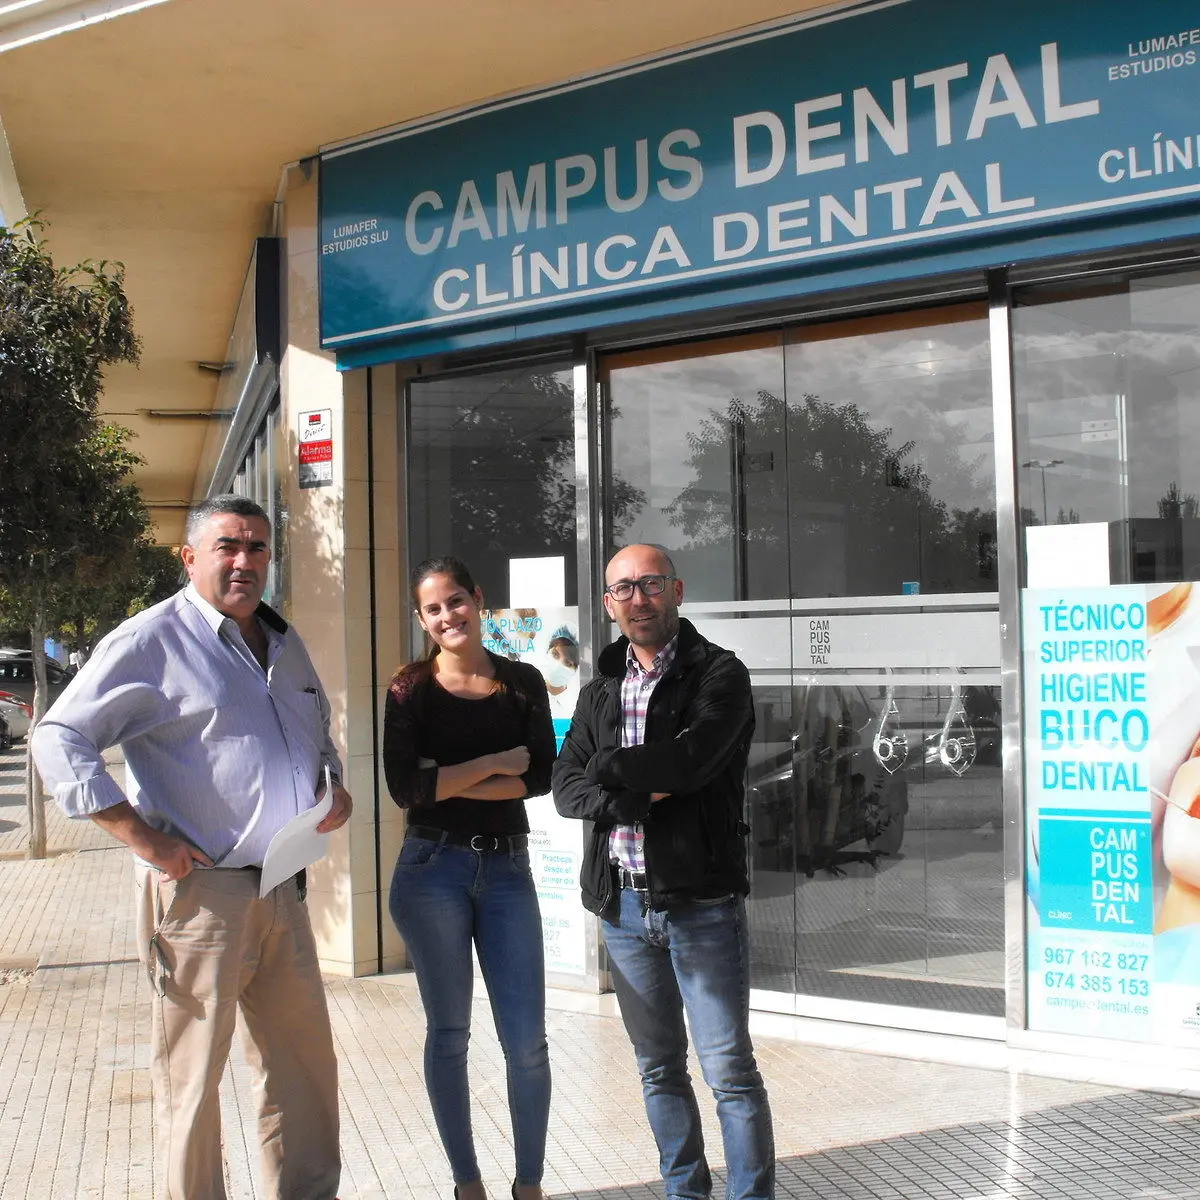 clínica campus dental albacete - Qué servicios se ofrecen en una clínica dental